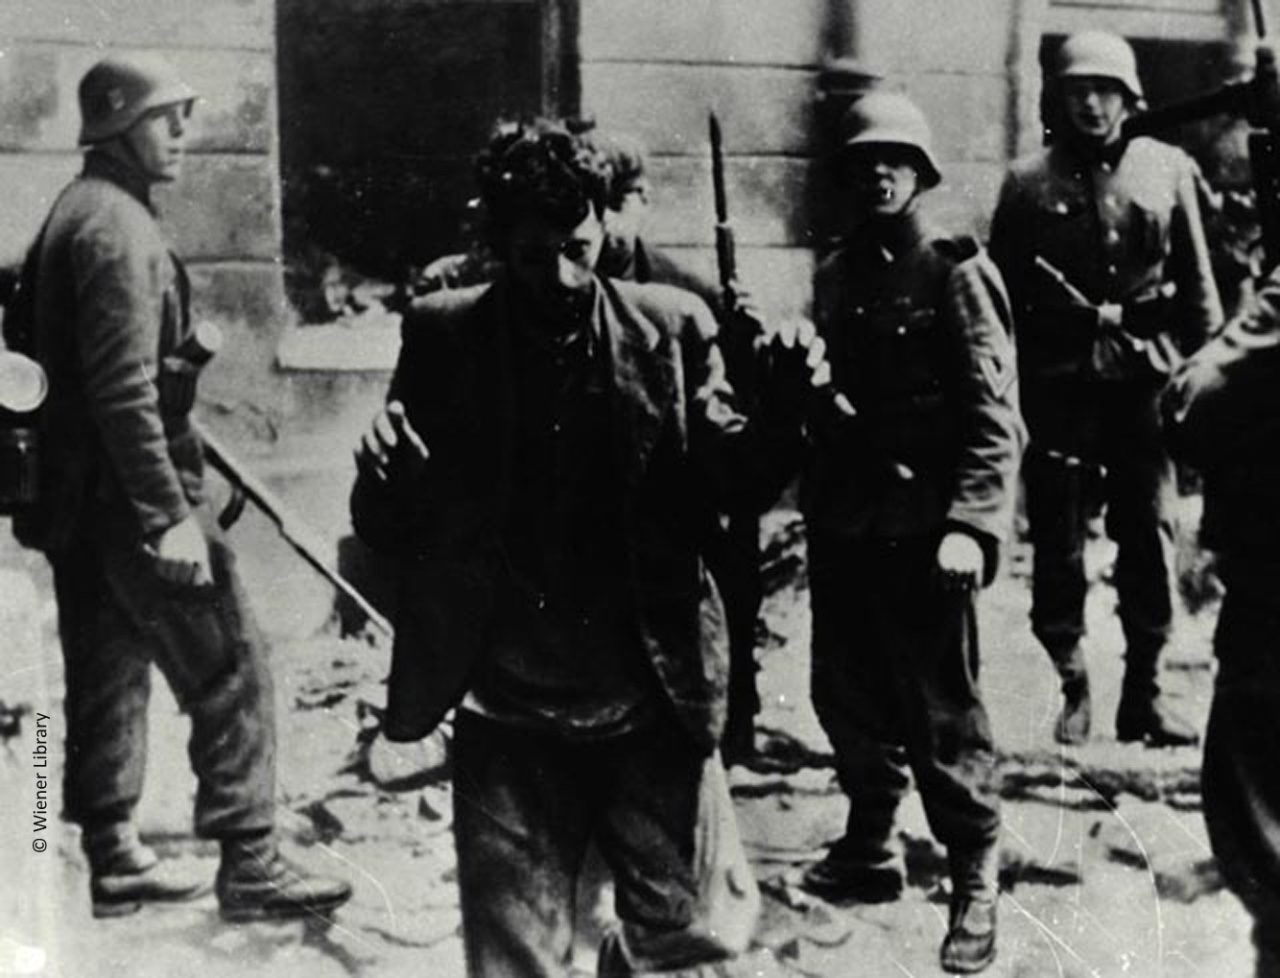 Underground resistance fighter in Warsaw Ghetto uprising 1945